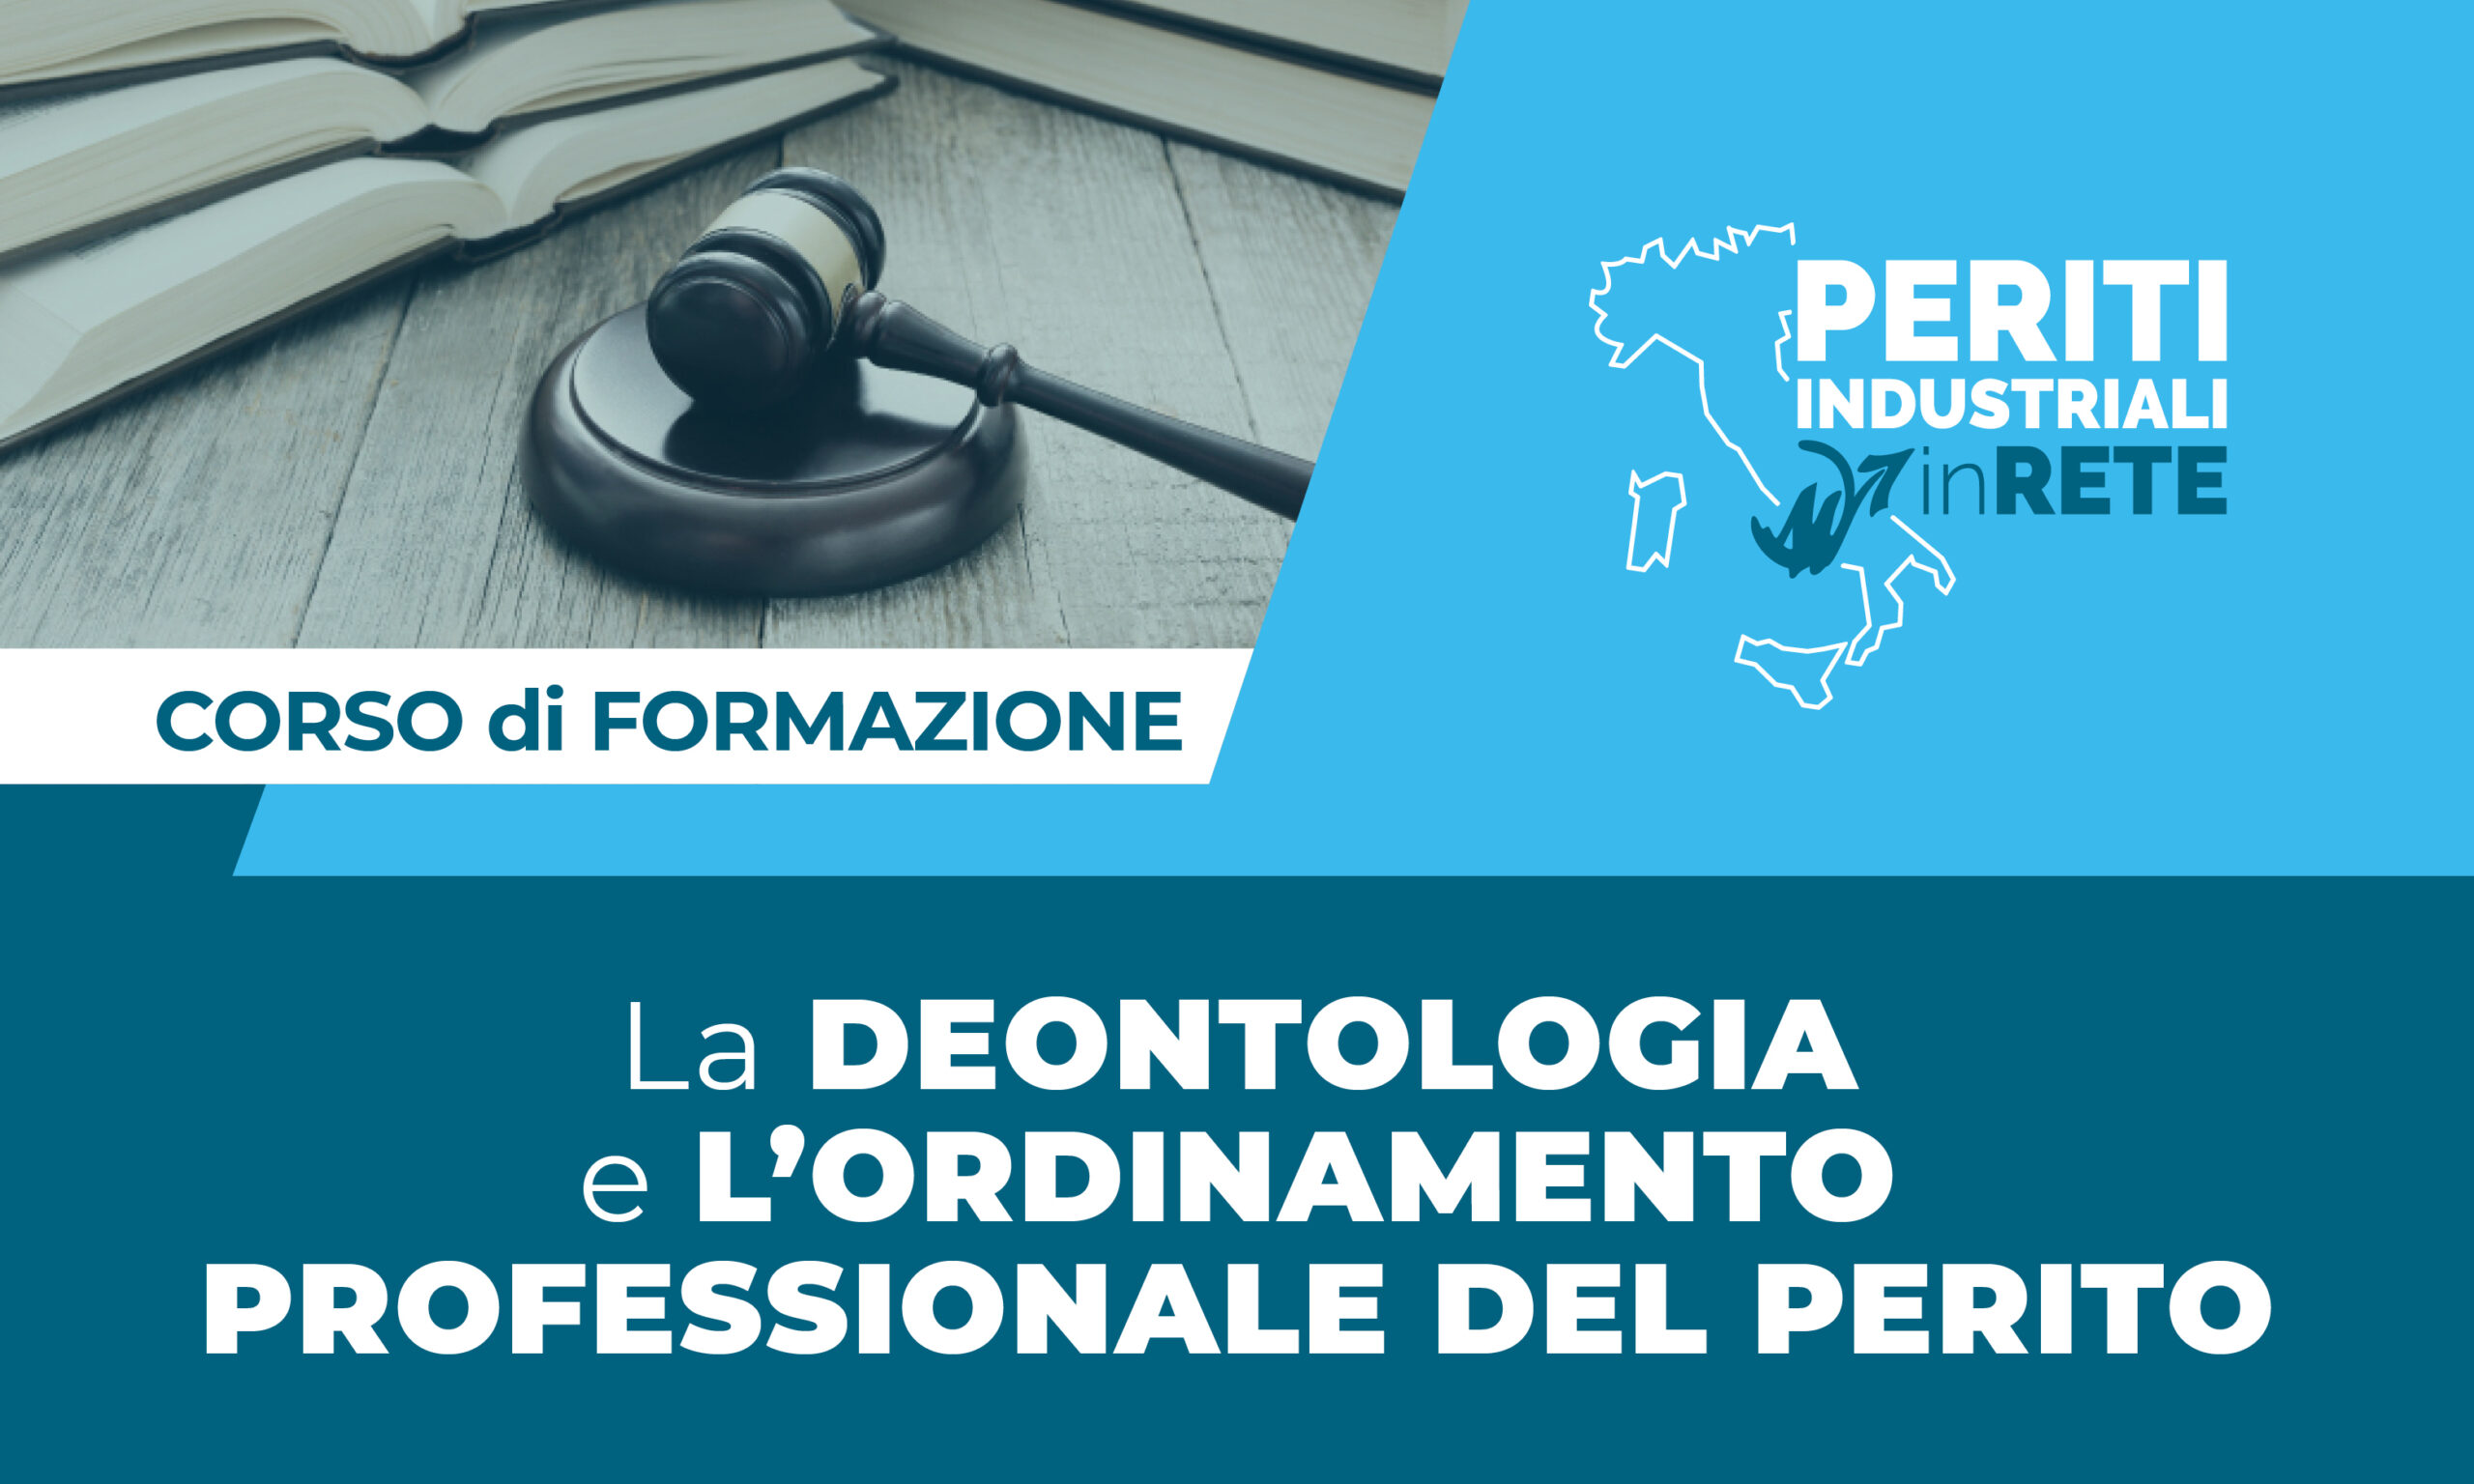 Corso di formazione deontologia e ordinamento professionale del perito - Pavia